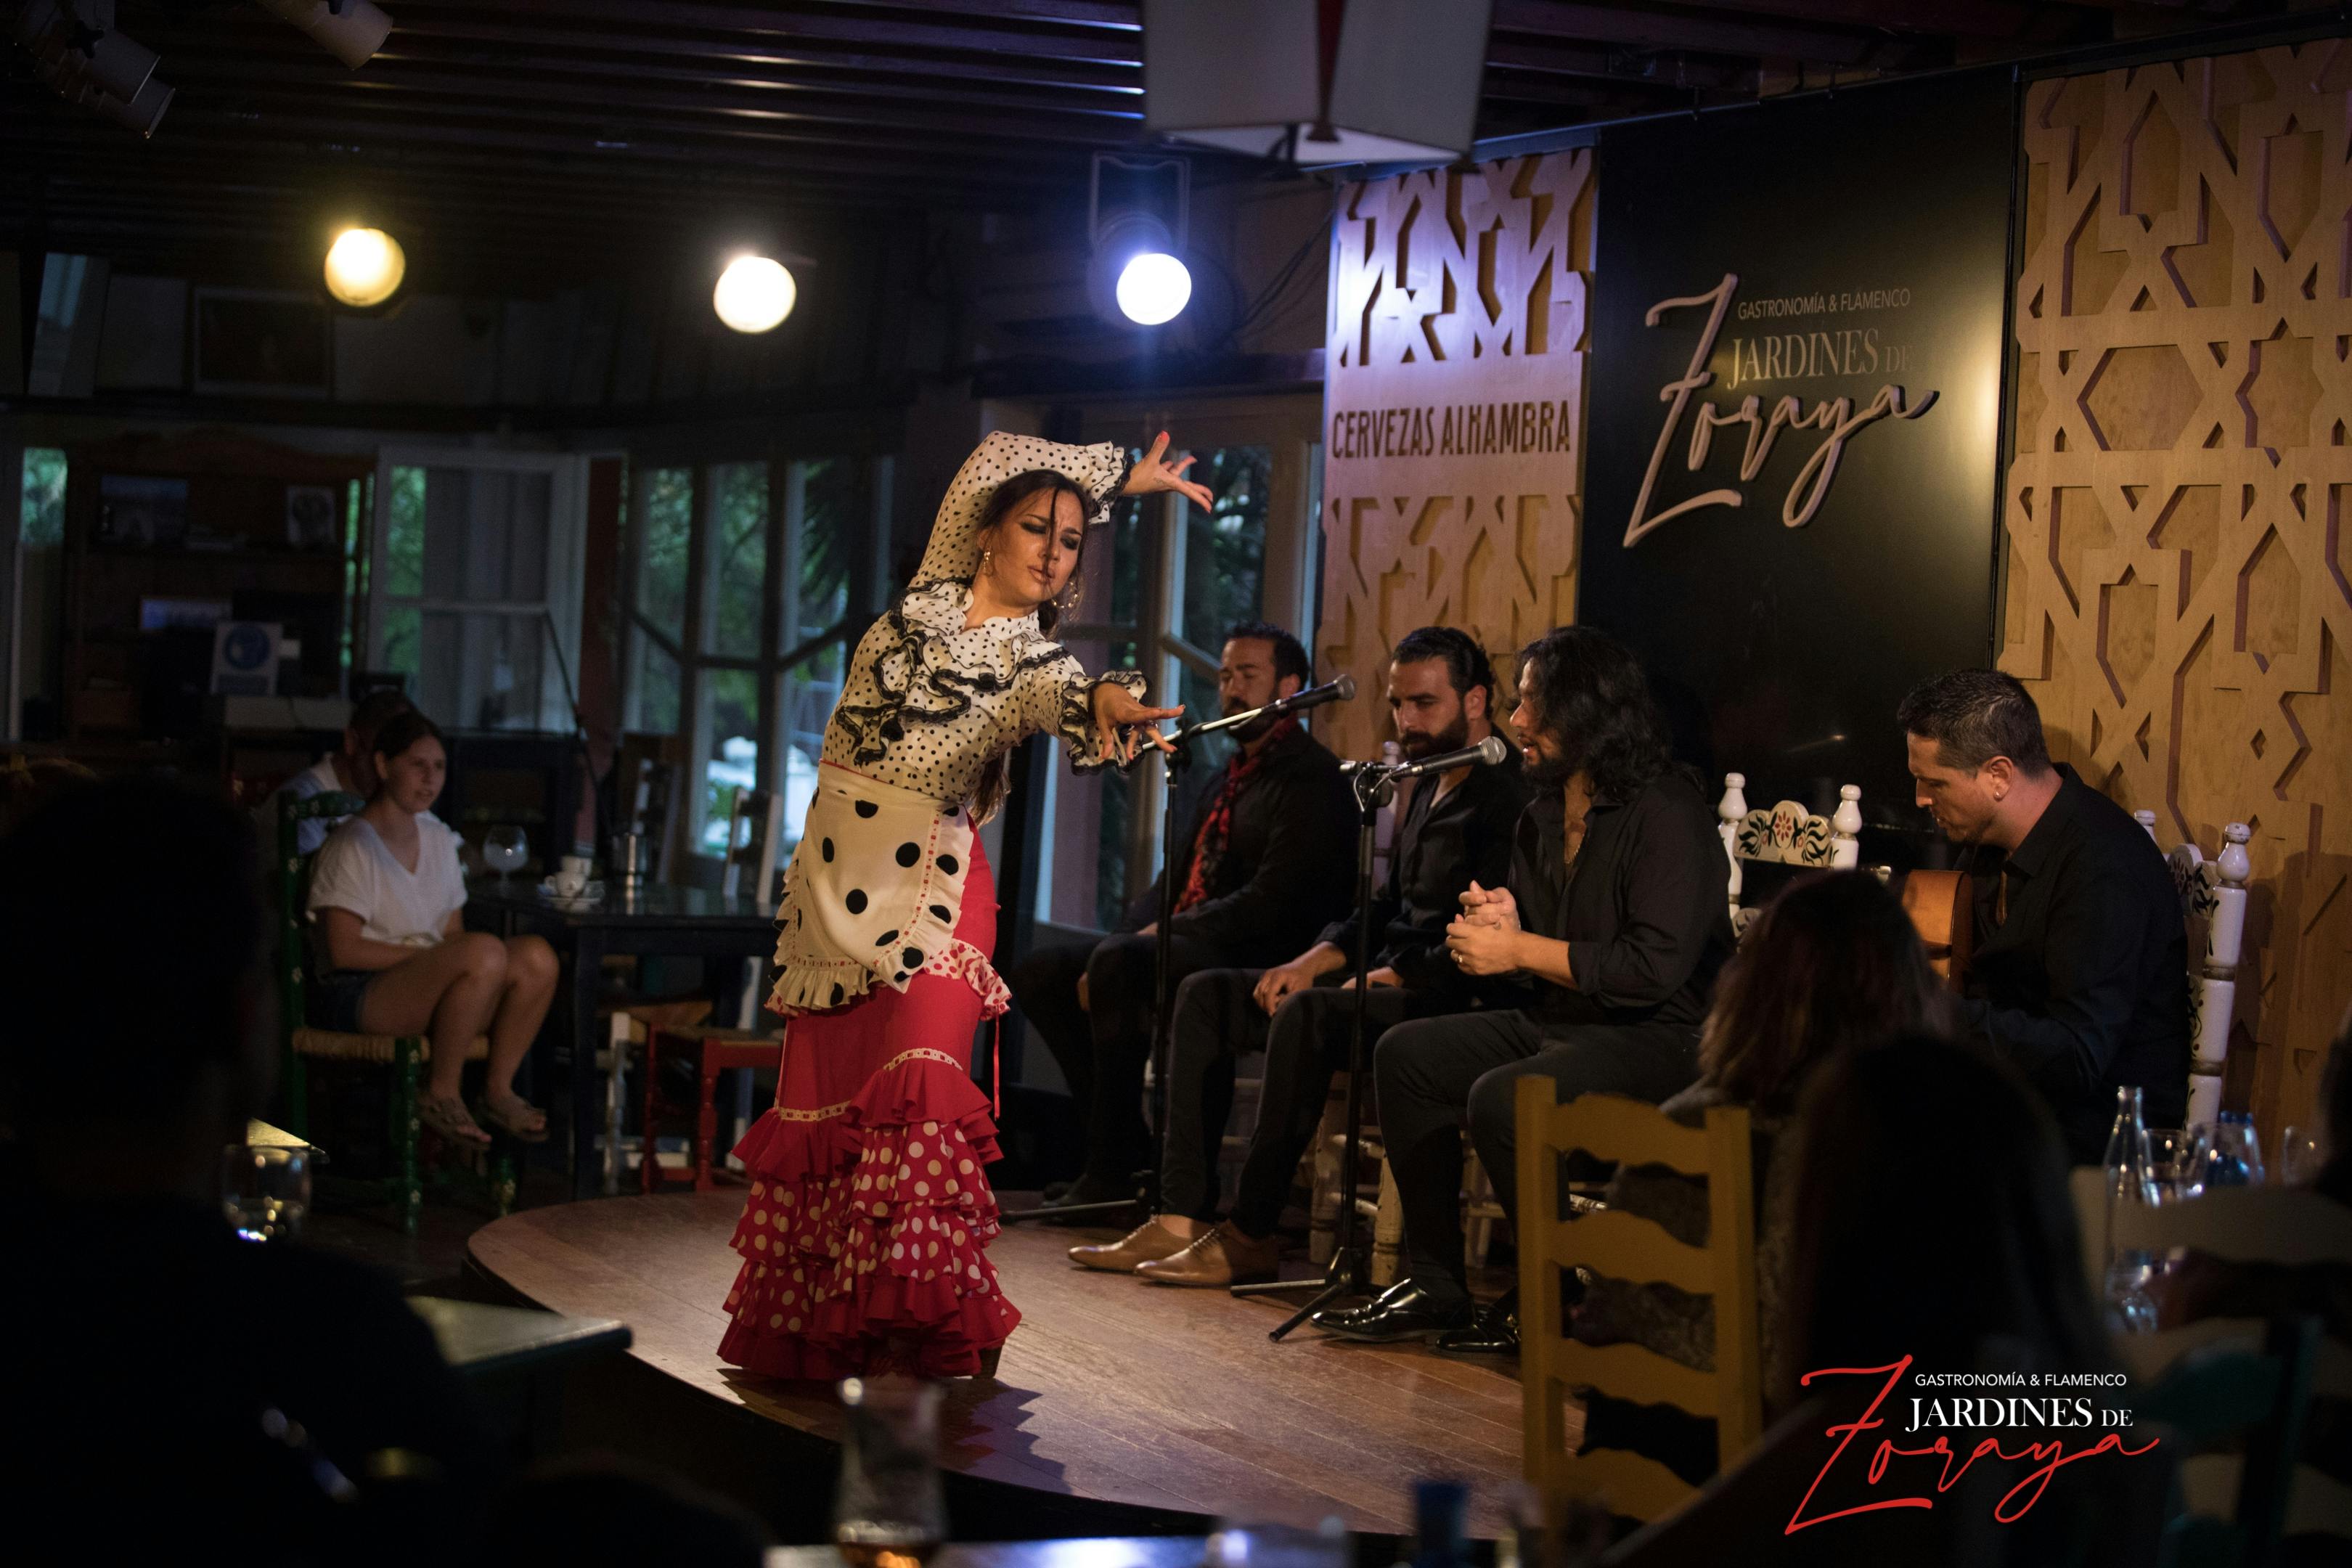 Biglietti per lo spettacolo di flamenco ai Jardines de Zoraya